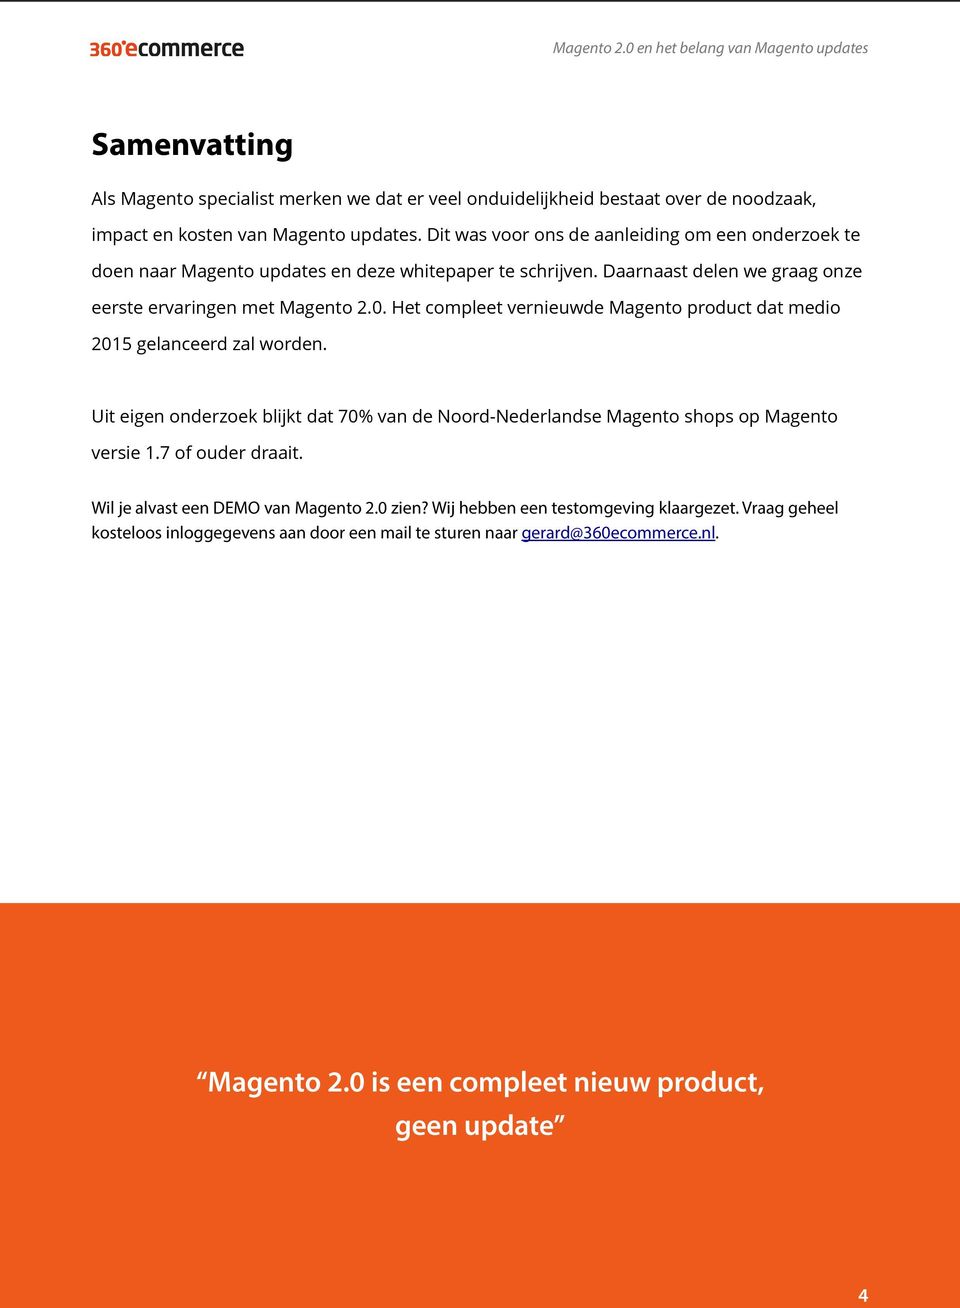 Het compleet vernieuwde Magento product dat medio 2015 gelanceerd zal worden. Uit eigen onderzoek blijkt dat 70% van de Noord-Nederlandse Magento shops op Magento versie 1.